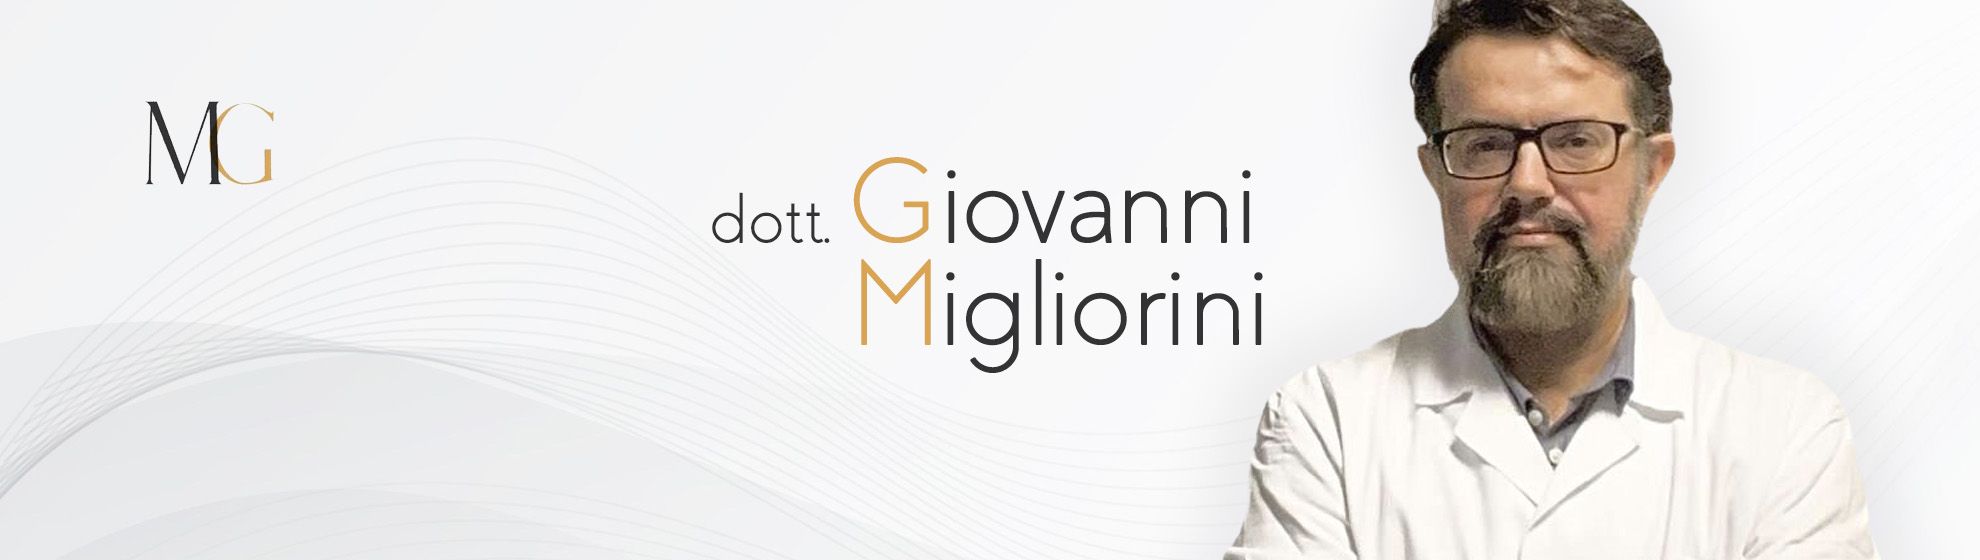 Dott. Giovanni Migliorini